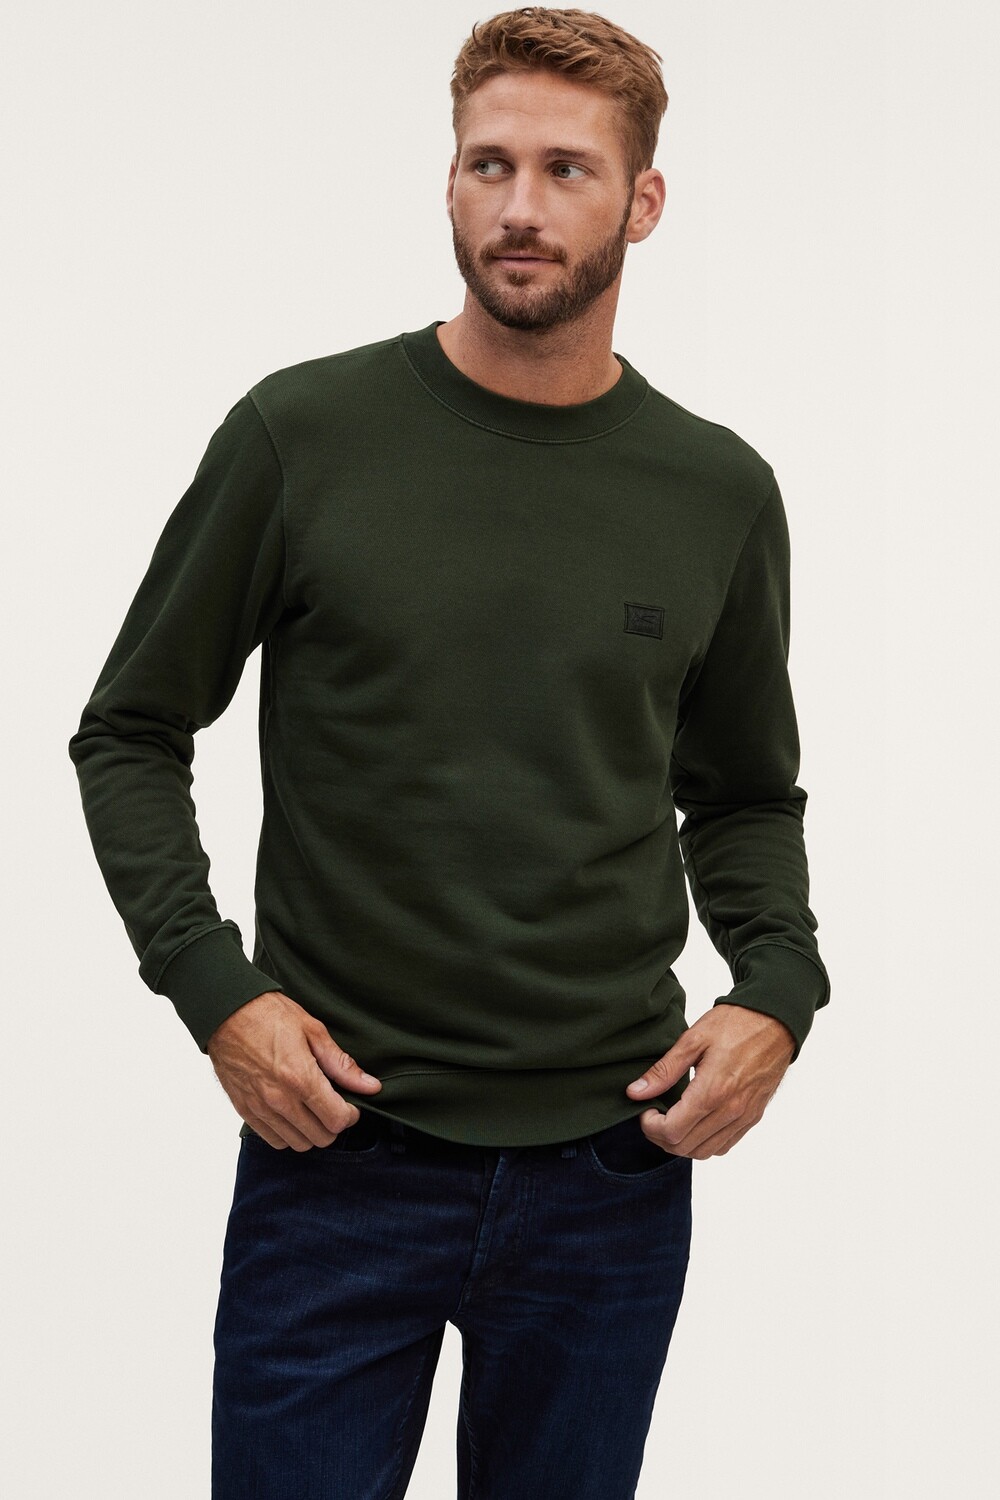 Denham Applique Sweater